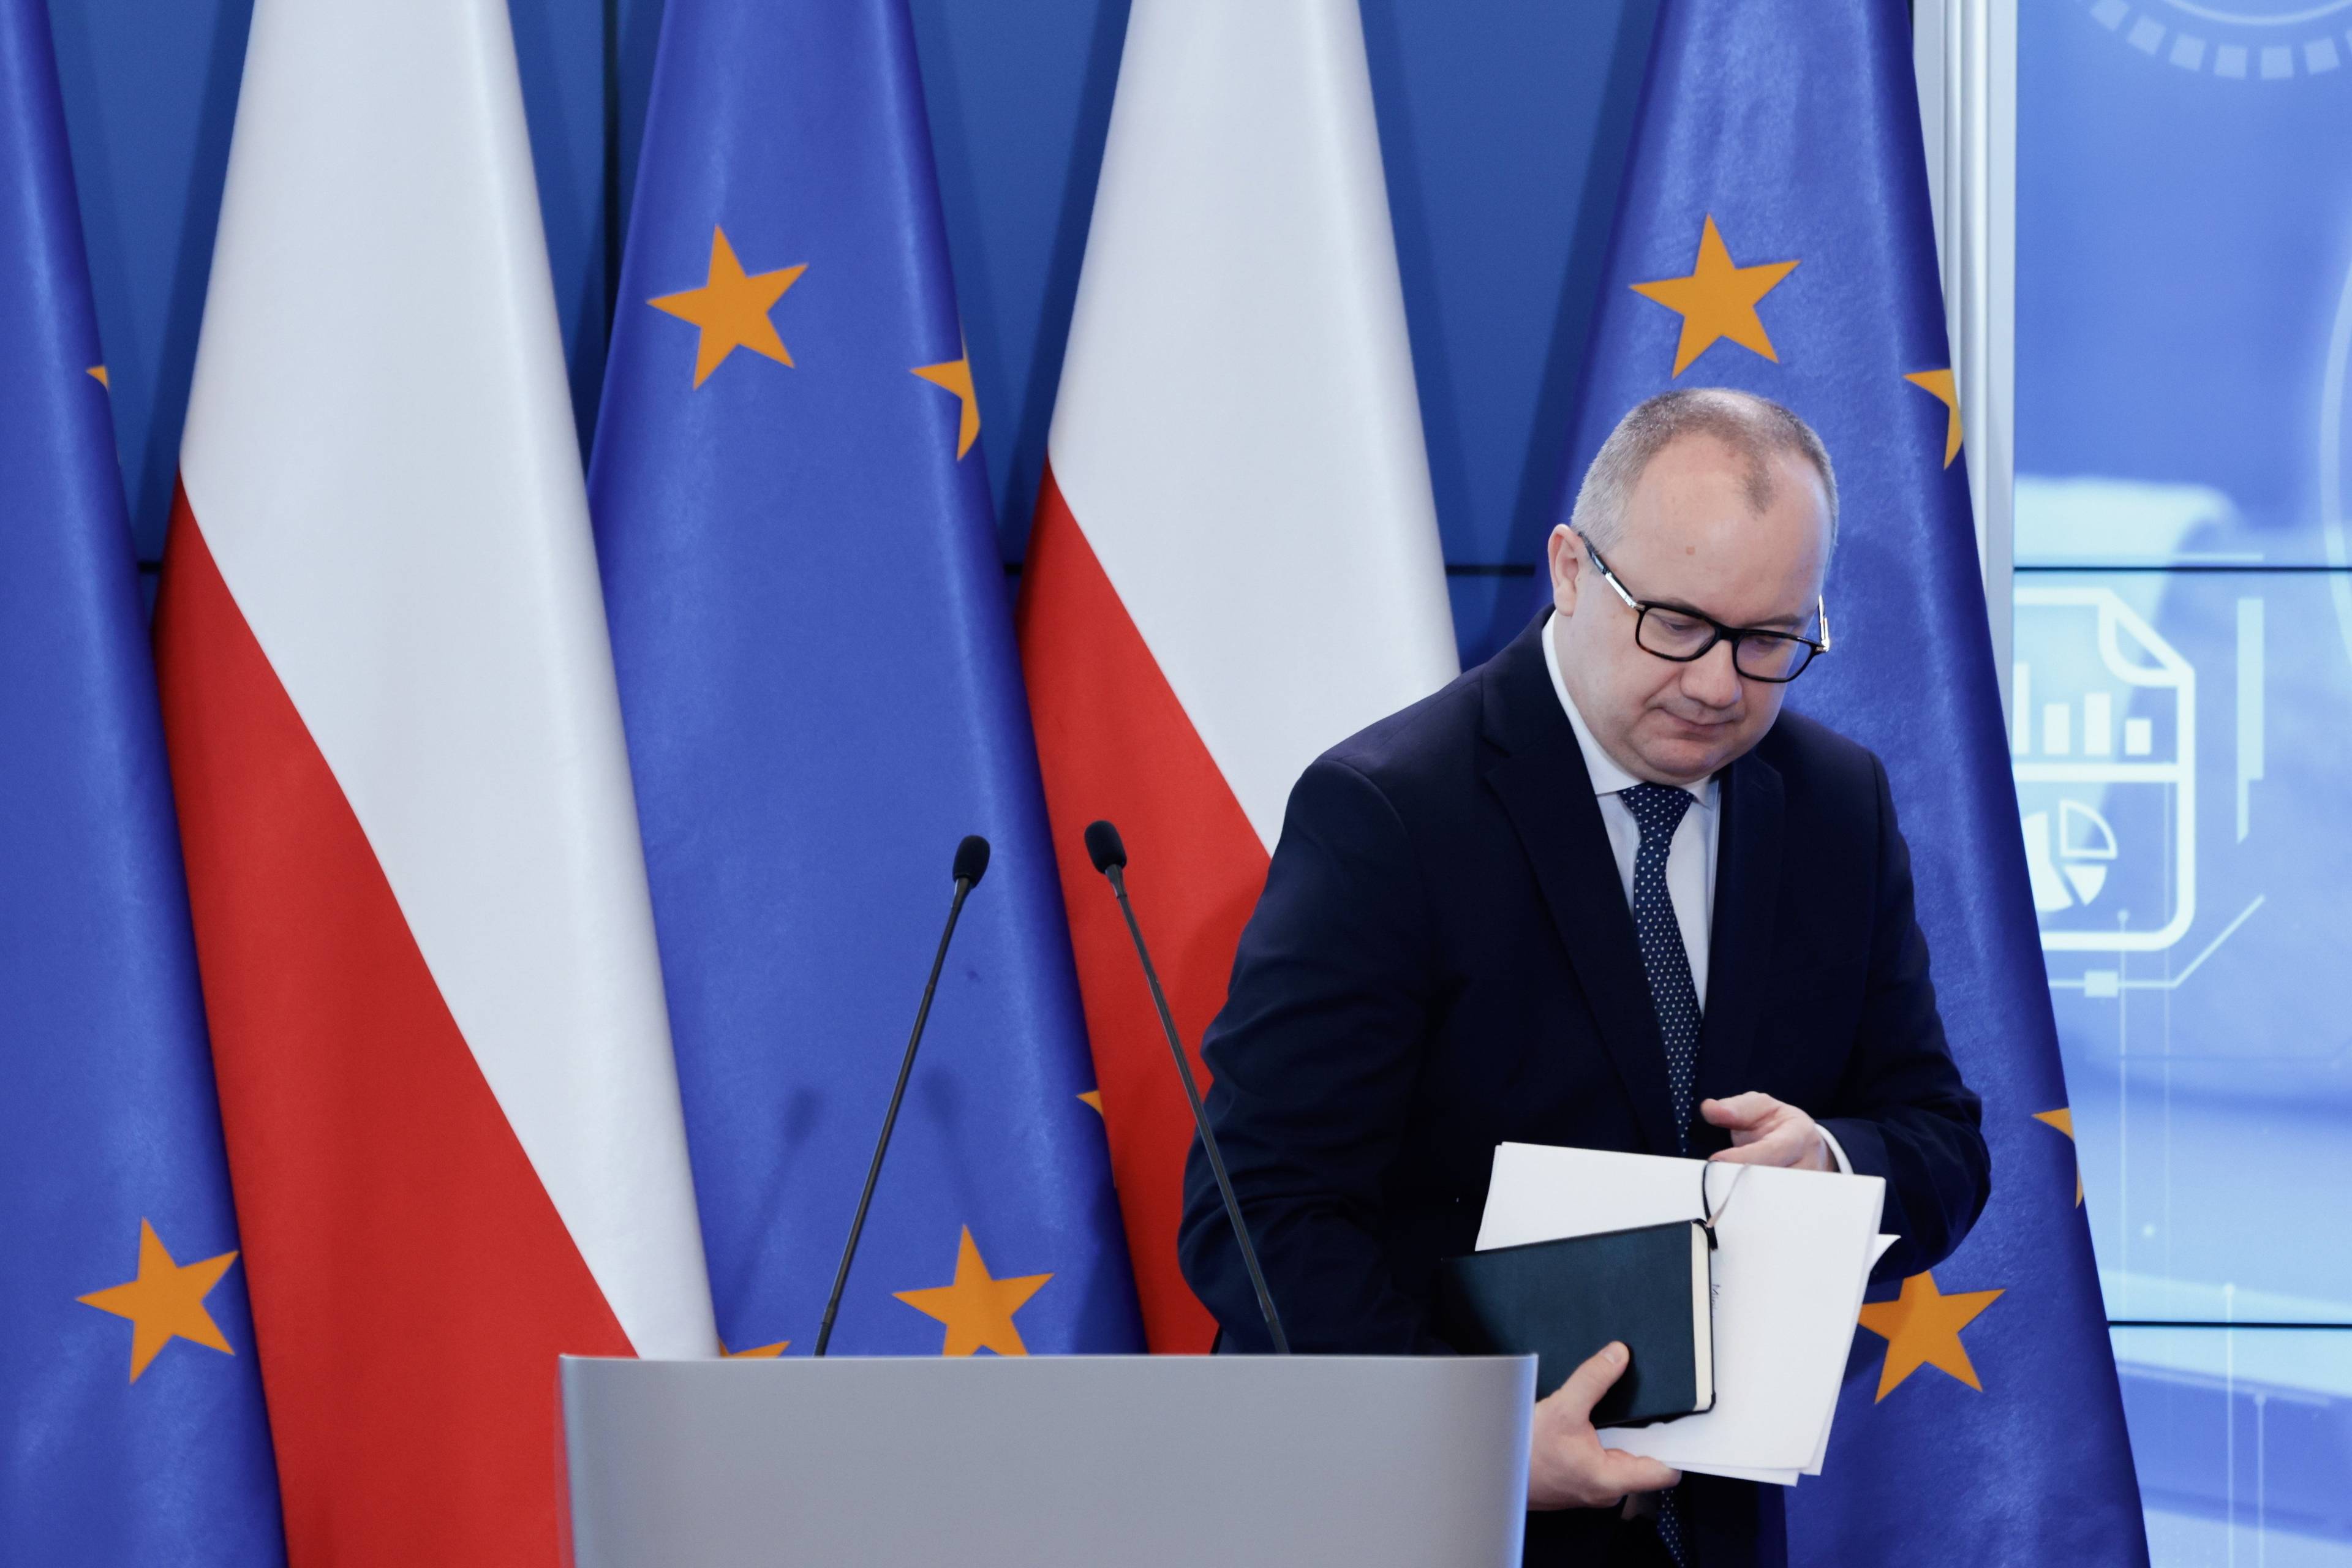 Adam Bodnar schodzi z mównicy, w ręce trzyma notes i papiery, za nim flagi Polski i UE